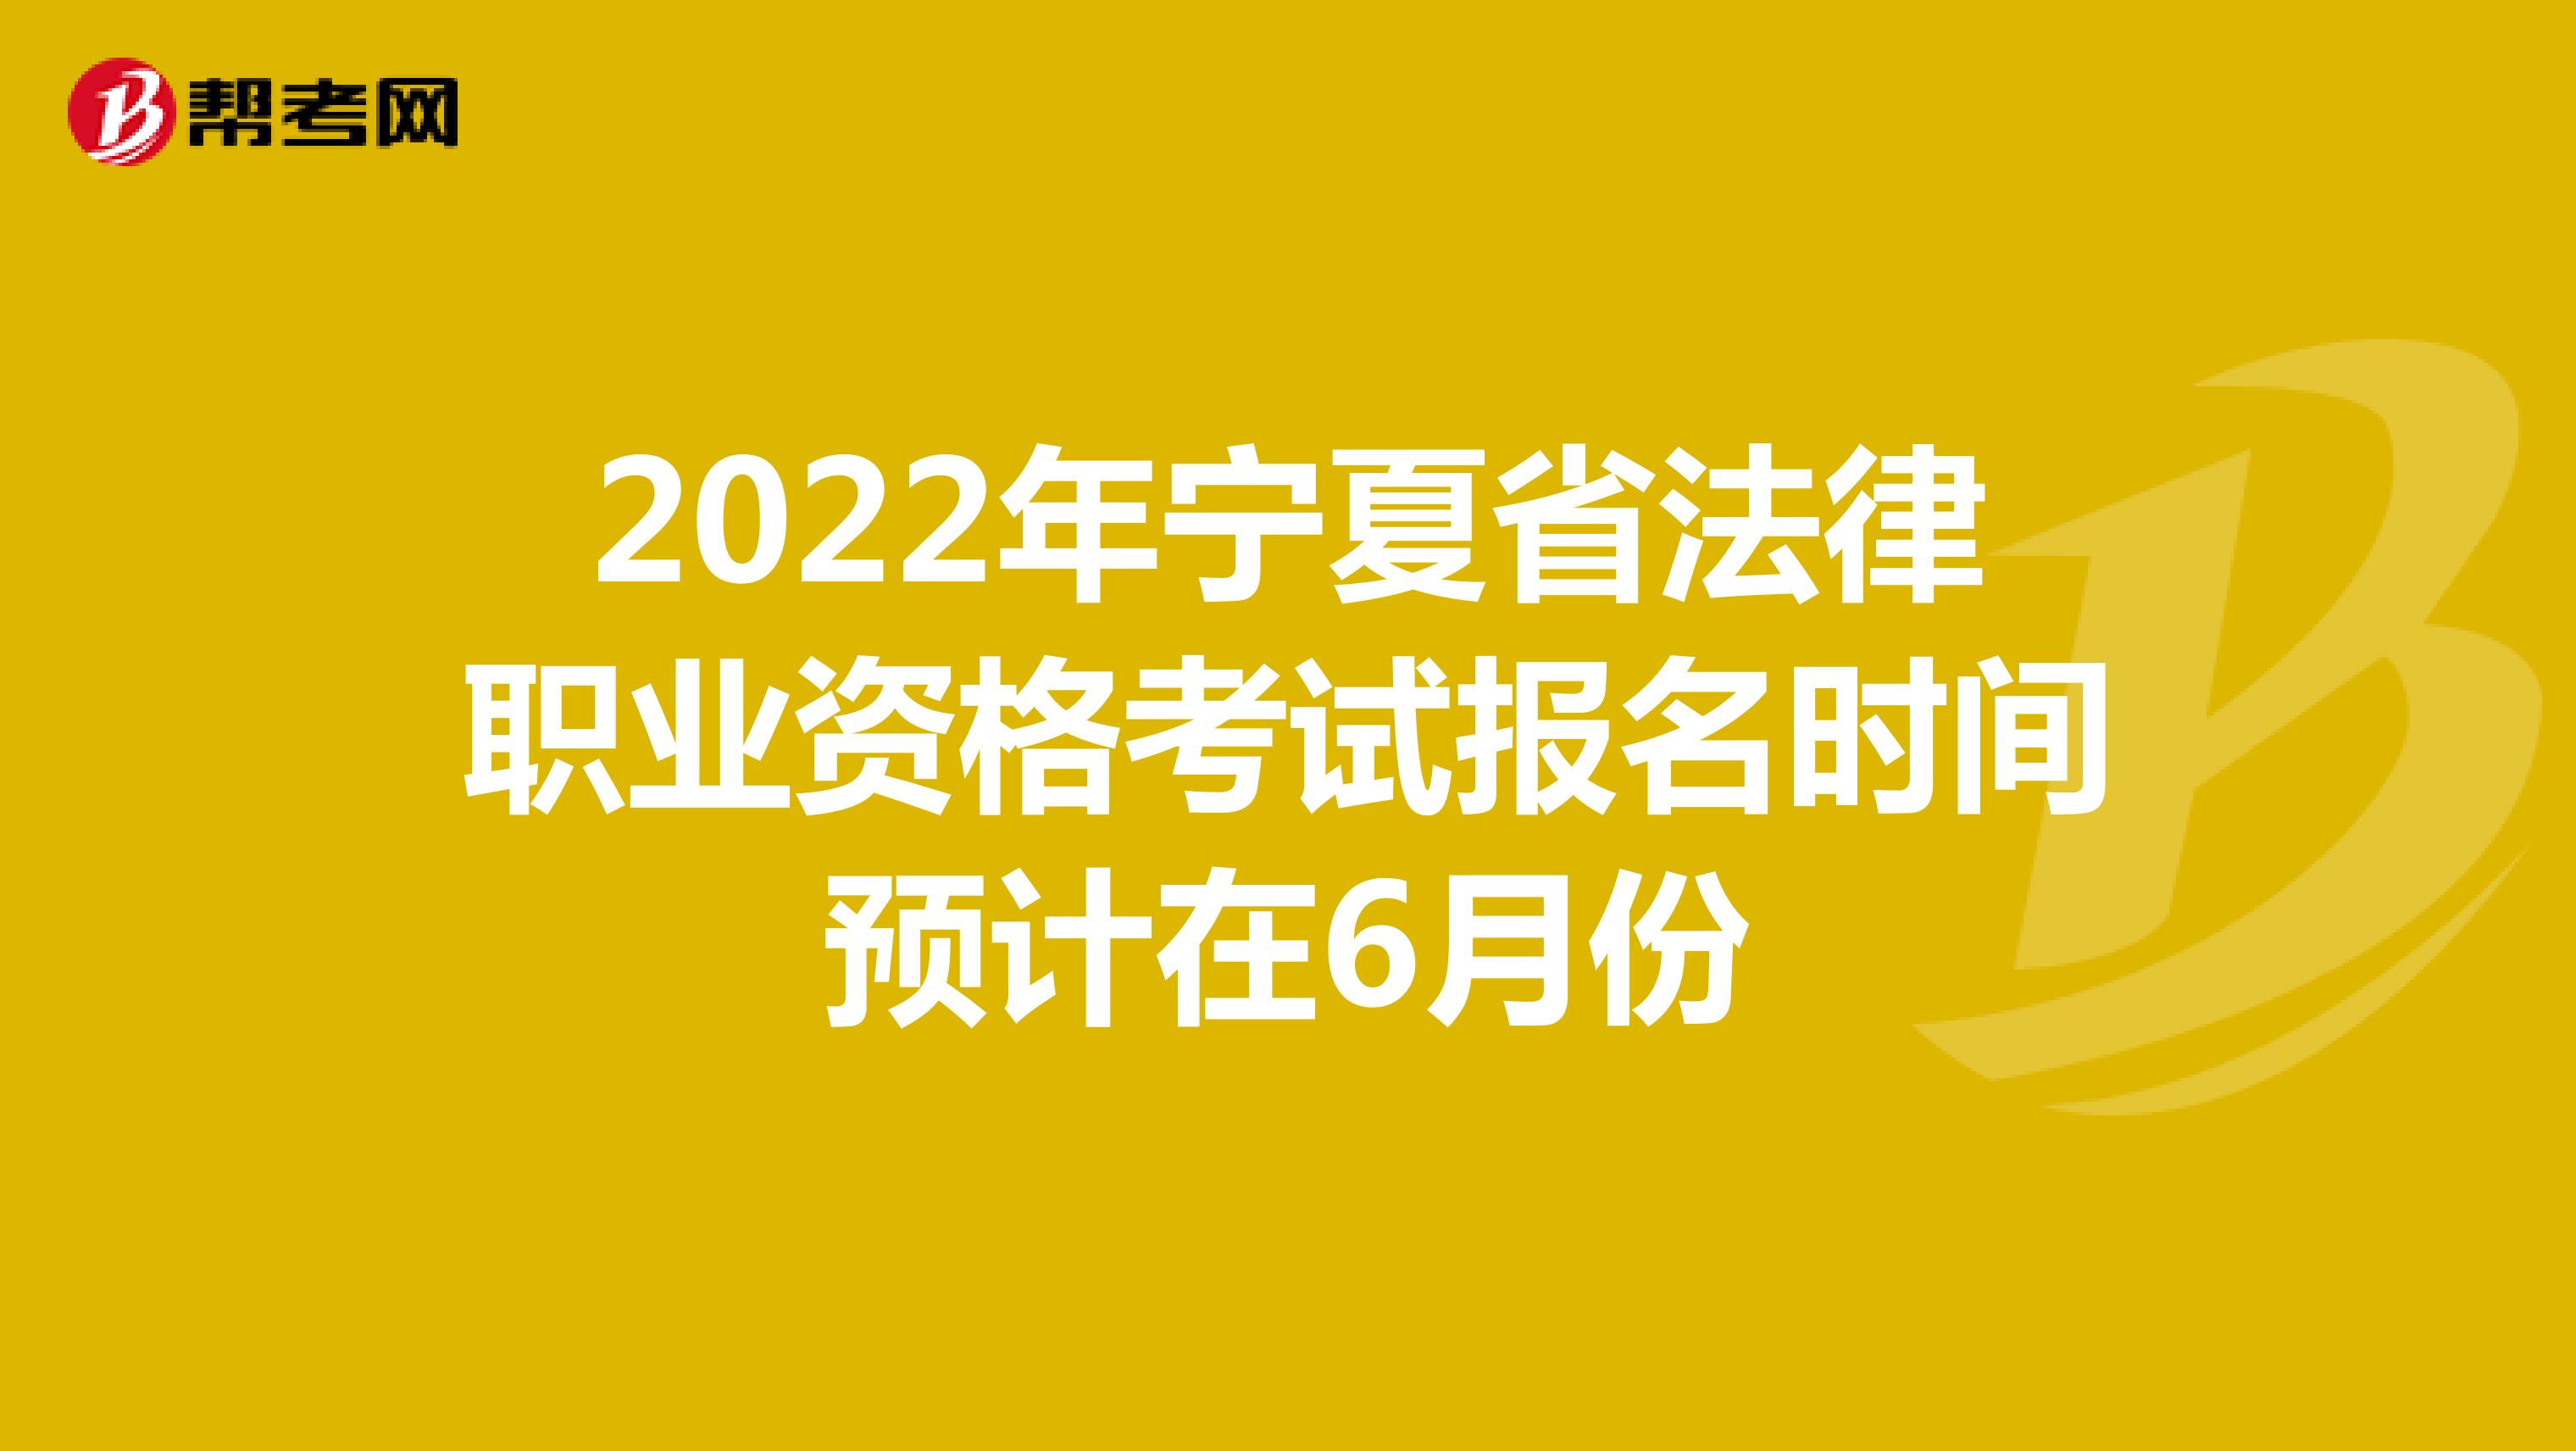 2022年宁夏省法律职业资格考试报名时间预计在6月份